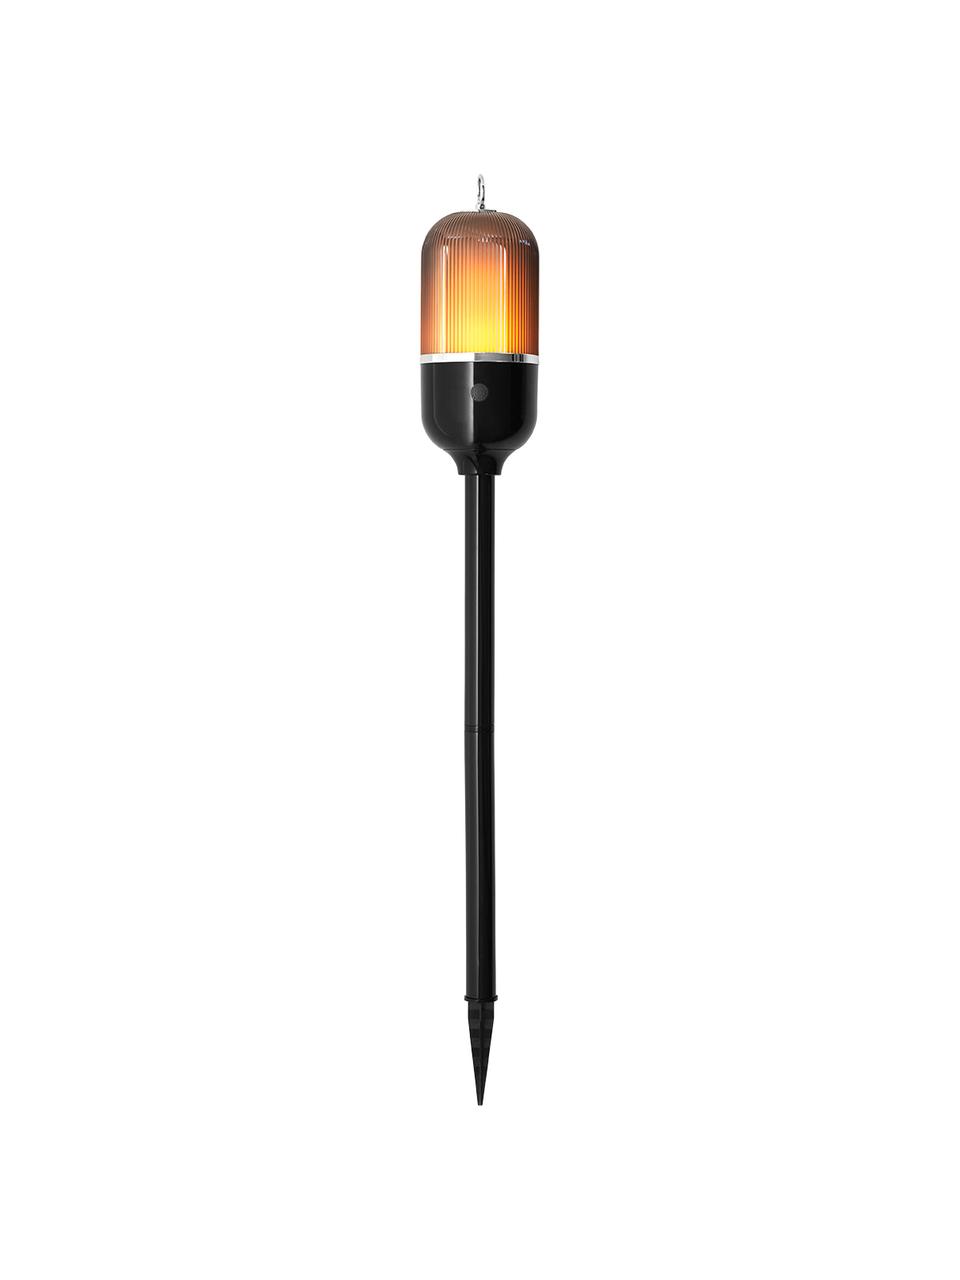 Lampa zewnętrzna LED New Flame, Czarny, transparentny, Ø 10 x W 88 cm